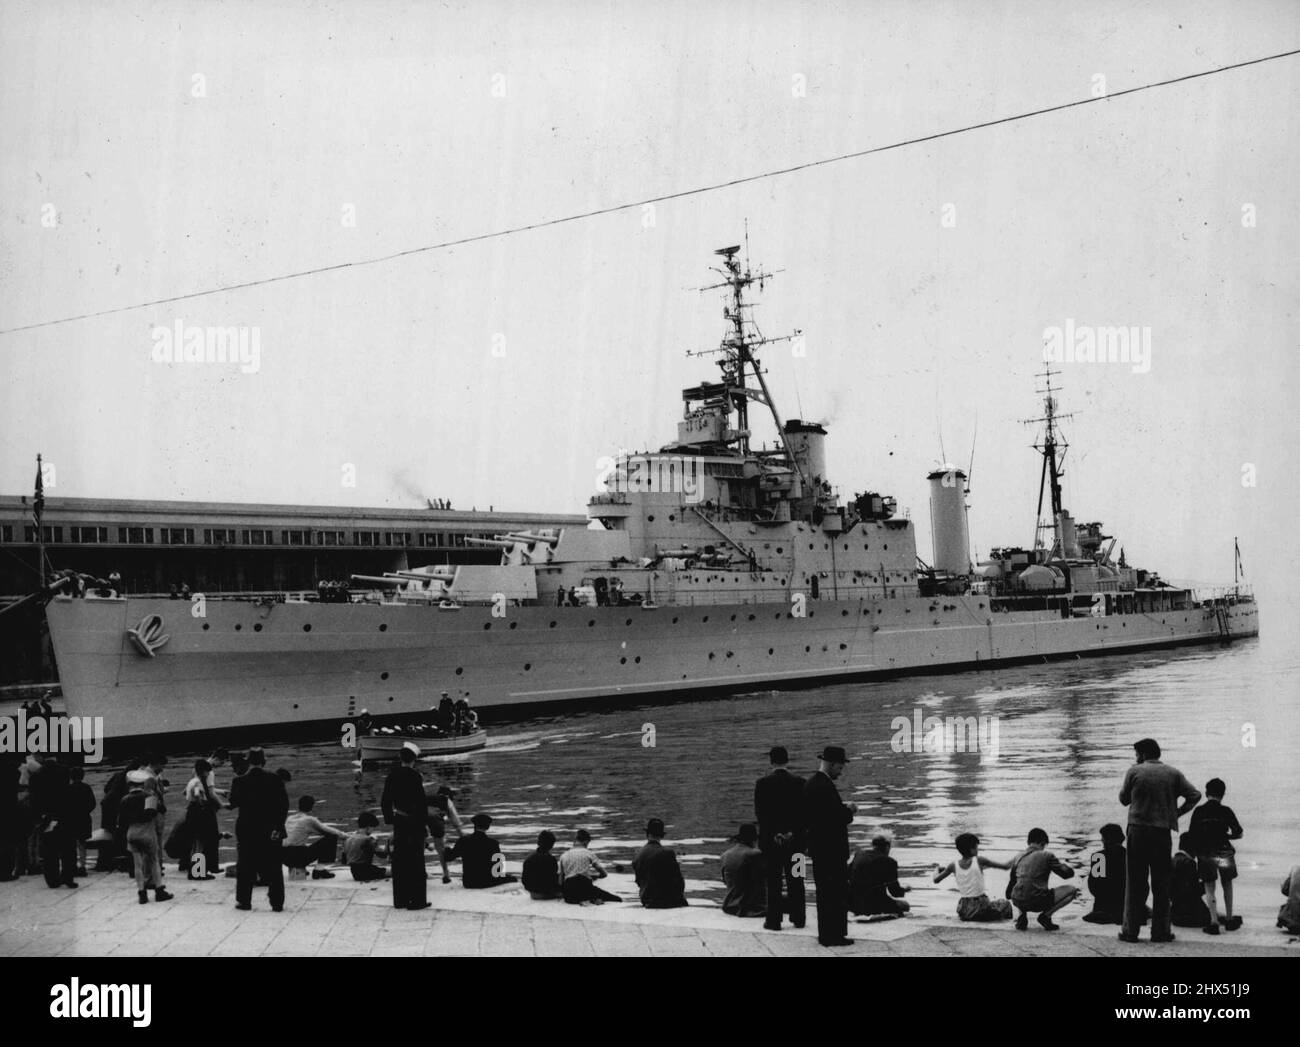 'Laurius' ordonné aux environs d'Abadan -- Une photo du croiseur 'laurius' vu dans le port de Trieste, mai 1947.la Grande-Bretagne a ordonné au croiseur 'laurius' de 'procéder immédiatement' aux environs d'Abadan, le port pétrolier de l'Iran en difficulté.le secrétaire aux Affaires étrangères, Herbert Morrison, en dévoilant ceci aujourd'hui 26 juin, Dans la chambre des communes, a déclaré la compagnie anglo-iranienne en même temps a ordonné à tous ses pétroliers de quitter Abadan immédiatement.la compagnie a agi en vue d'une impasse avec les autorités perses sur les conditions pour que les pétroliers partent avec des cargaisons de pétrole. 26 juin 1951. (Photo d'Assoc Banque D'Images